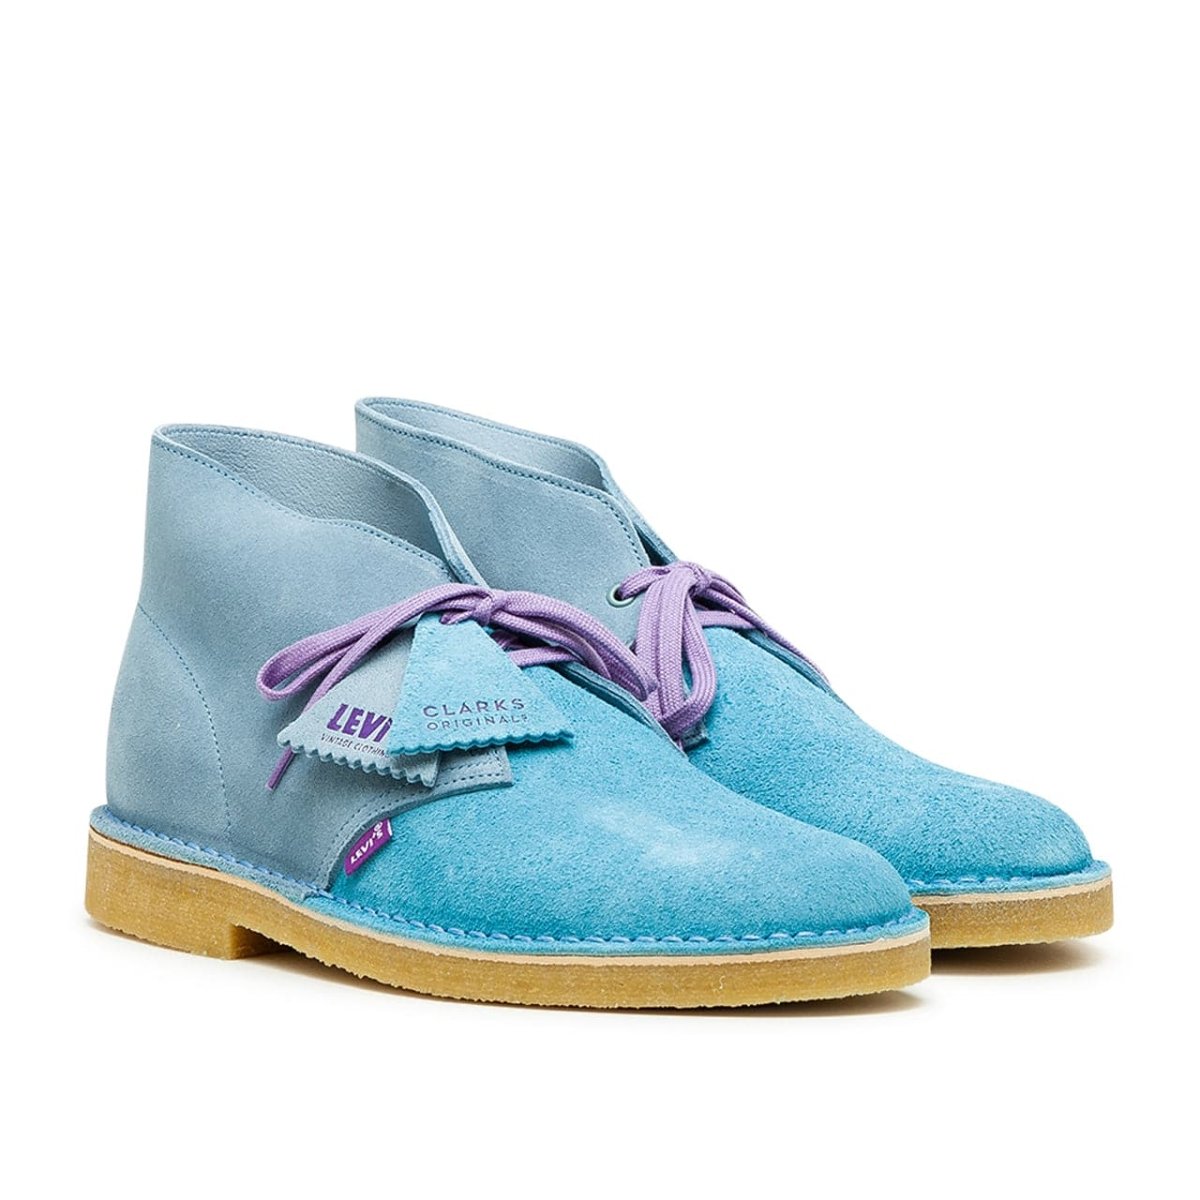 Clarks x Levi's Vintage Clothing Desert Boot (Blue) – Allike Store